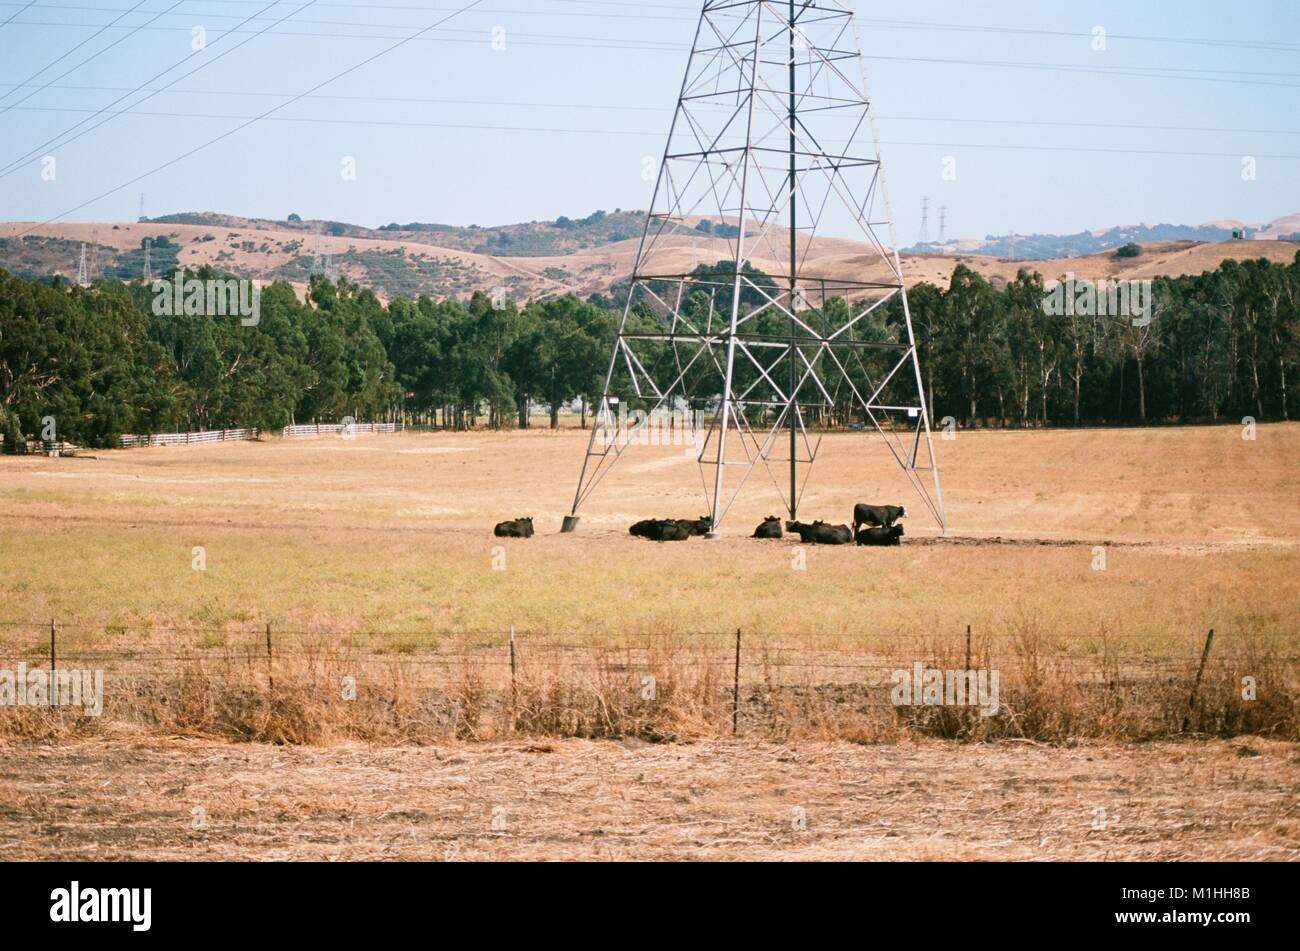 Les vaches se rassemblent près de la base d'un pylône de transmission électrique haute tension dans un champ dans une zone rurale de la région de la baie de San Francisco près de Hayward, Californie, le 17 août 2017. () Banque D'Images